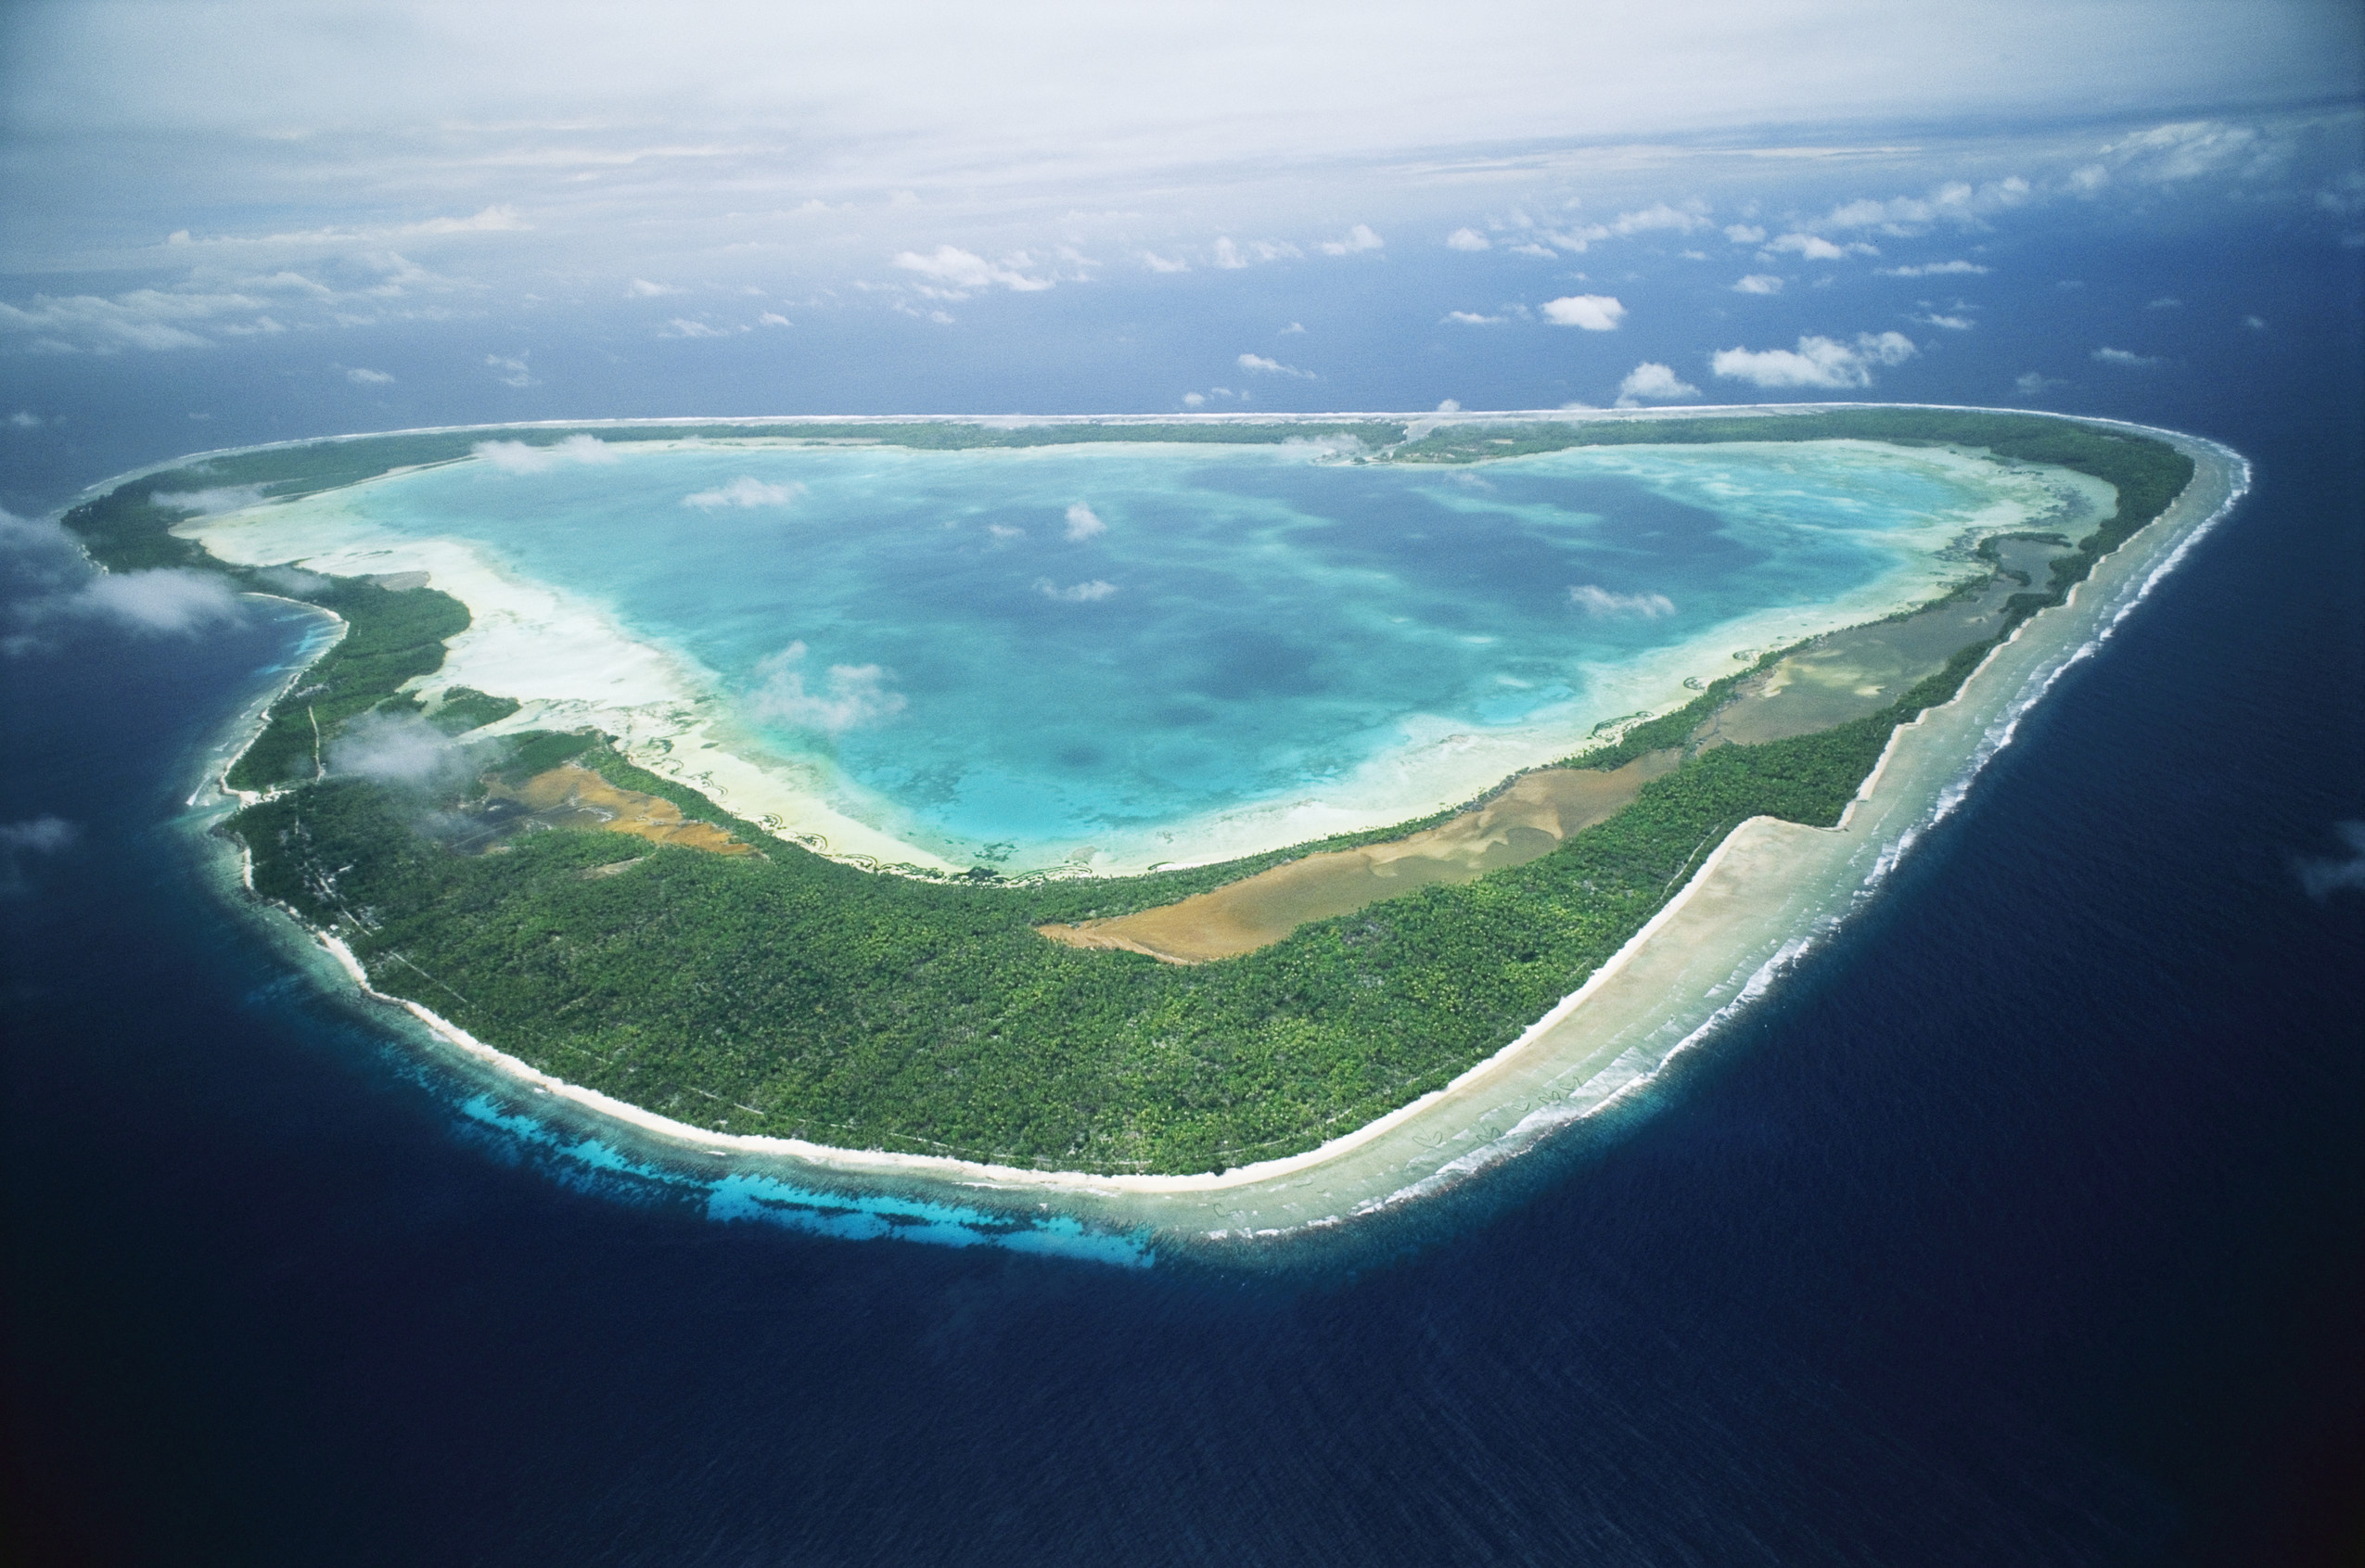 Южная часть тихого океана острова. Тарава Кирибати. Атолл Кирибати. Кирибати остров Тарава. Острова Гилберта, Кирибати.